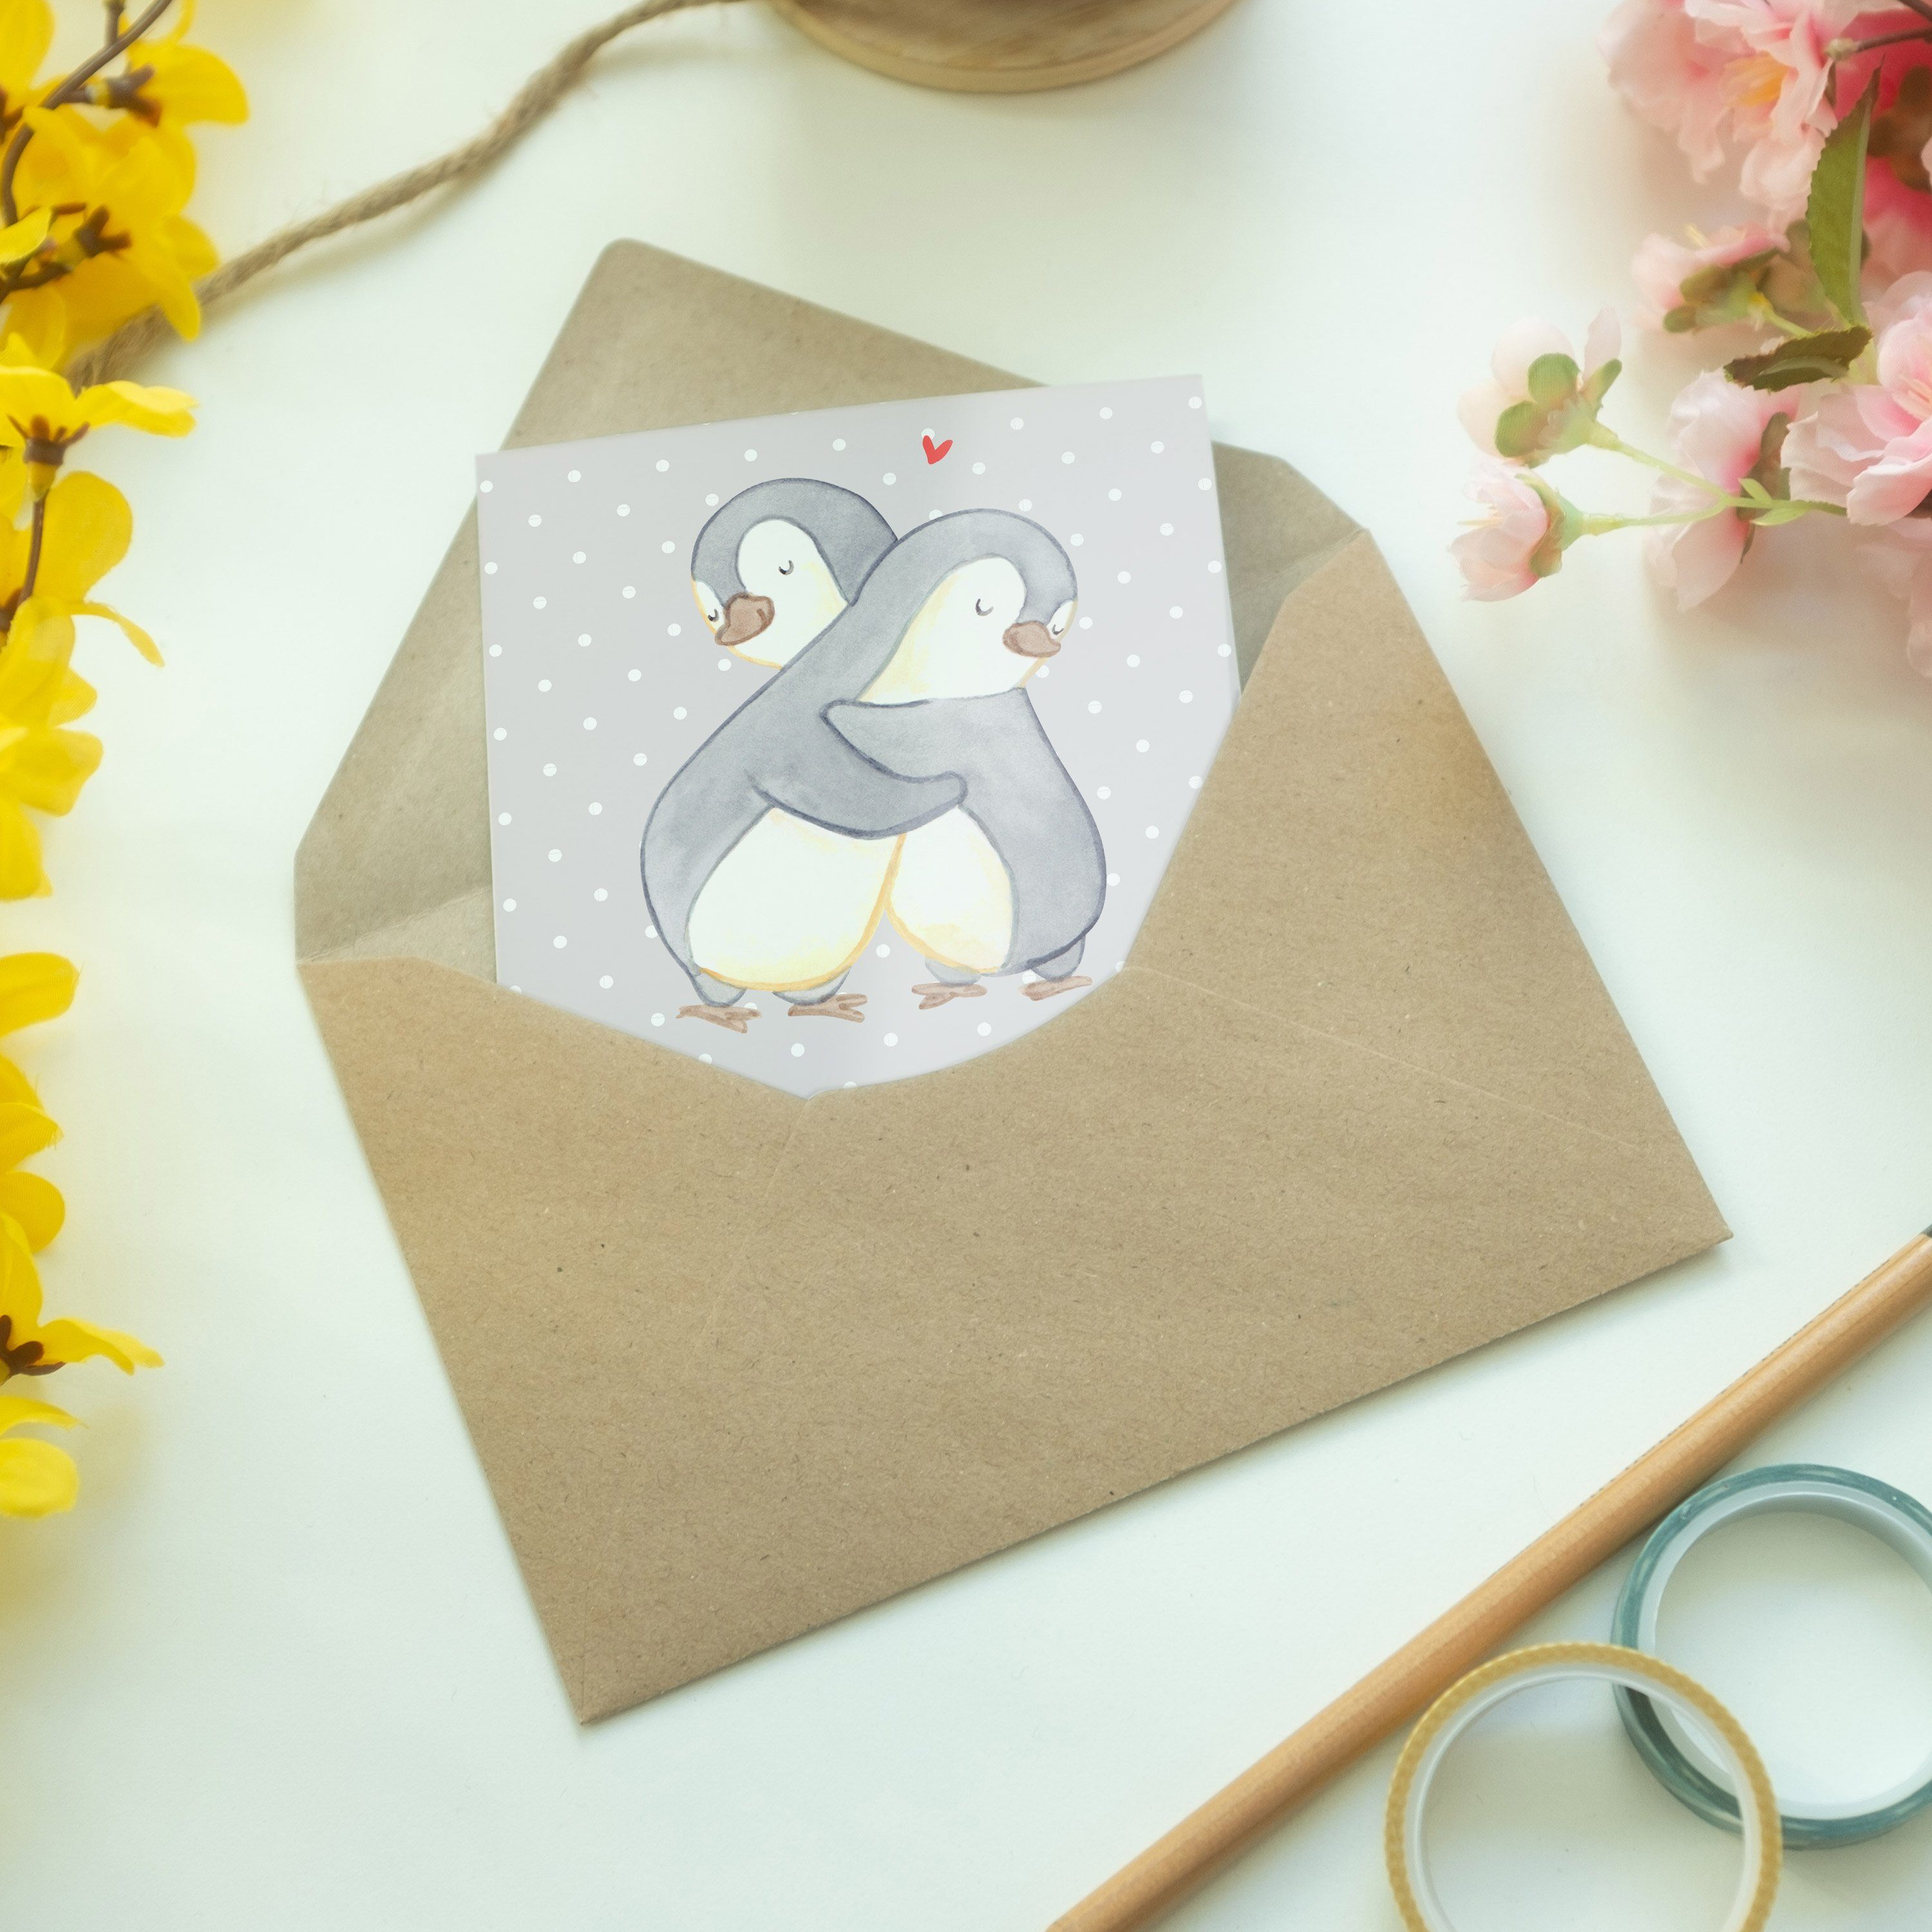 - Lieblingsmensch Grußkarte der Grau Welt Geschenk, & Gl Panda Mr. Mrs. Pastell - Pinguin Bester